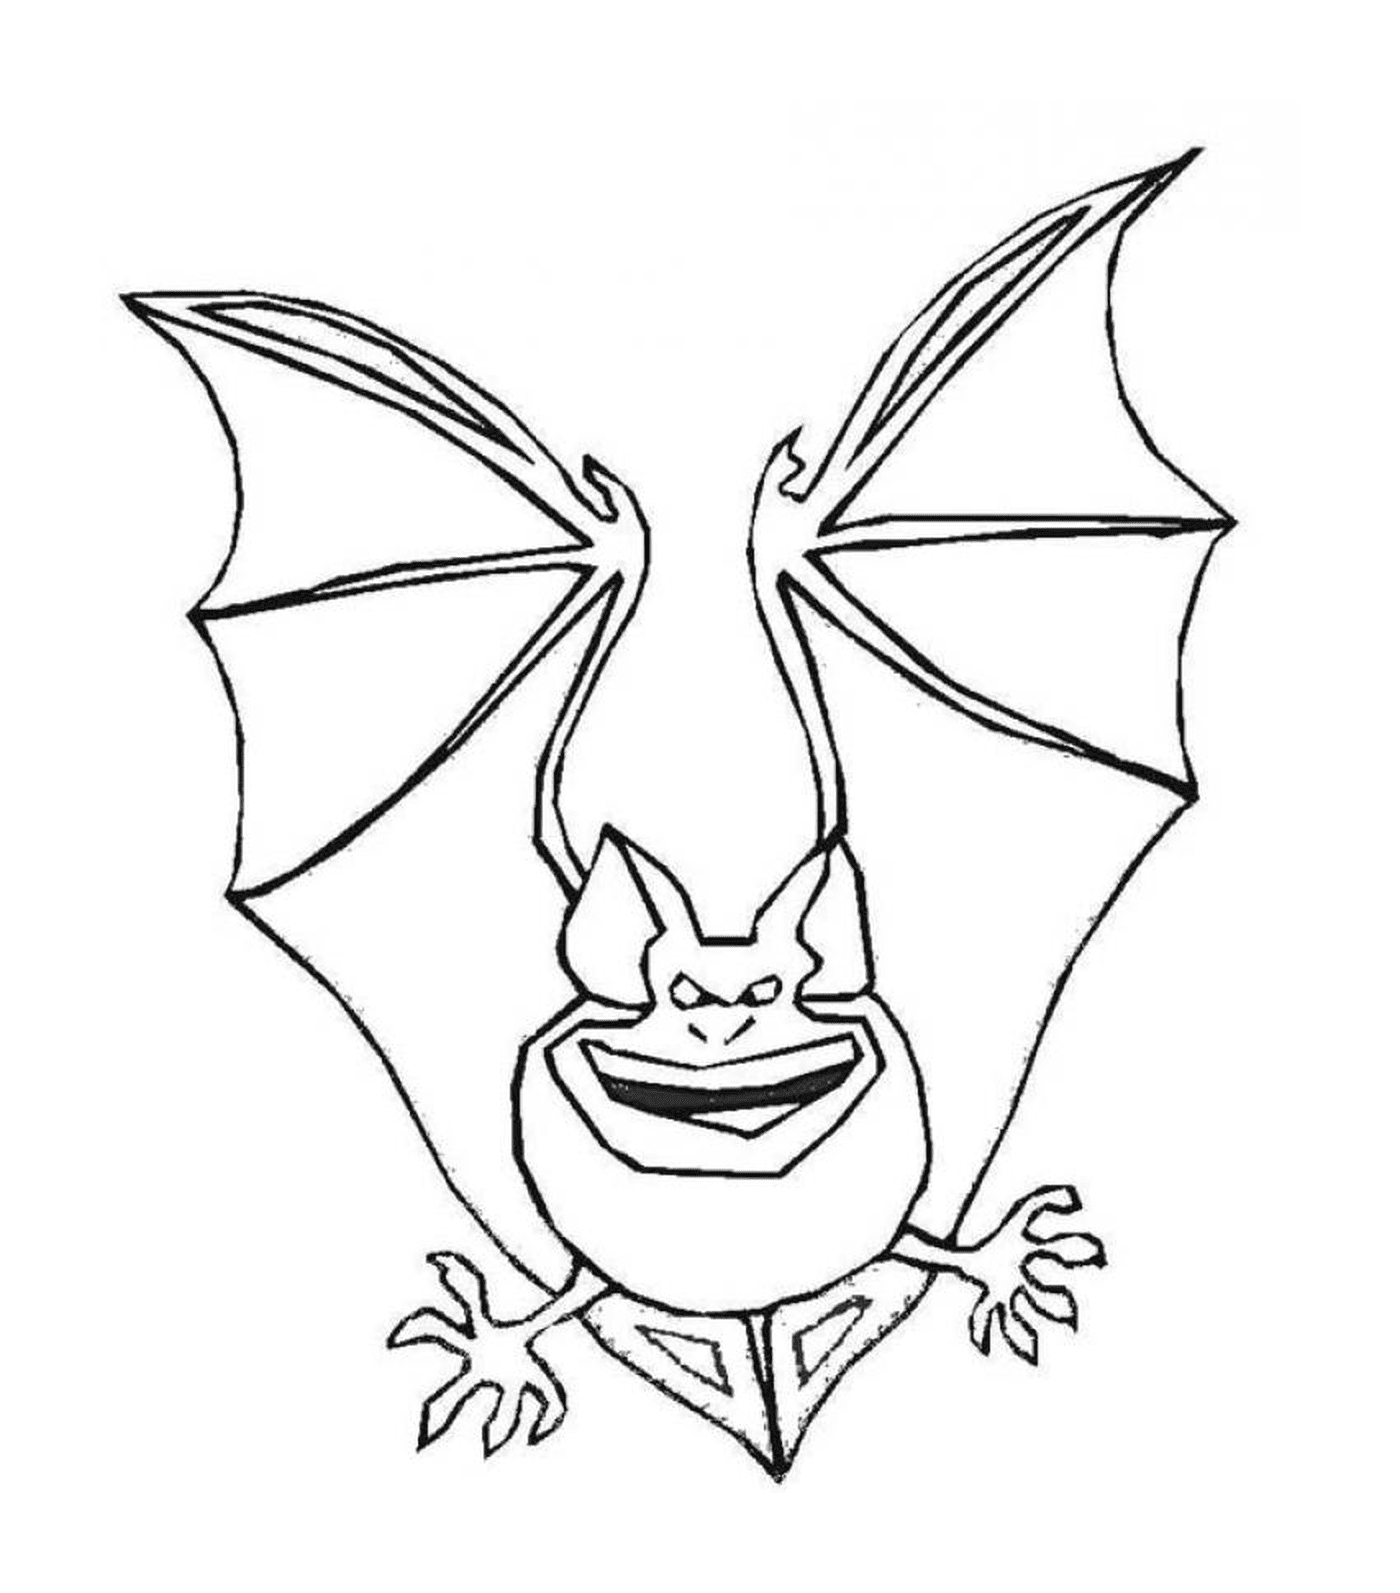  morcego com um rosto sorridente 